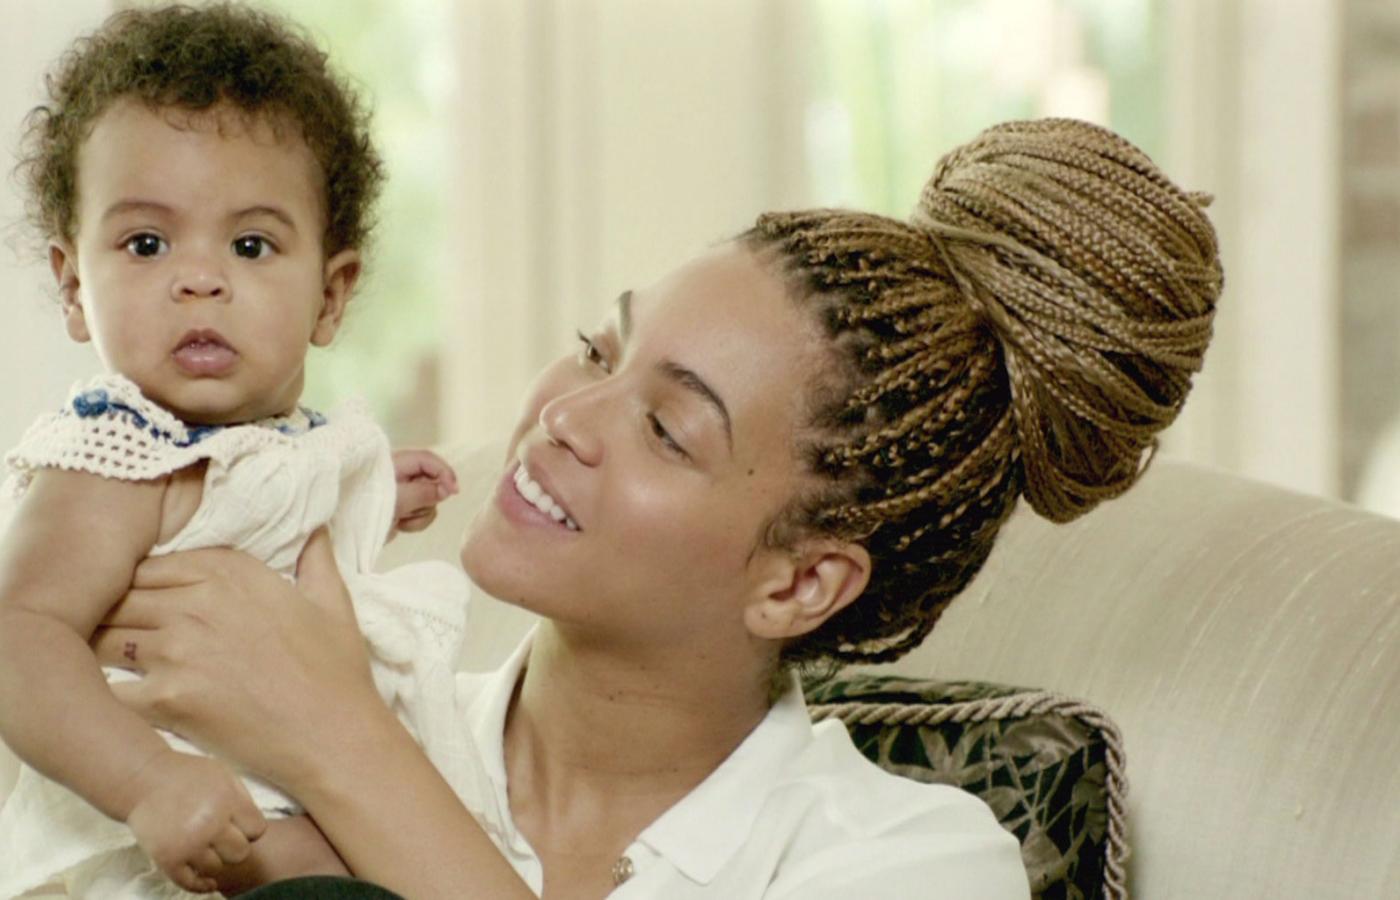 Beyoncé i jej mąż raper Jay-Z wkrótce po urodzinach córki, której dali wymyślone przez siebie imię Blue Ivy, złożyli wniosek do urzędu patentowego o zarejestrowanie imienia dziecka jako znaku towarowego.